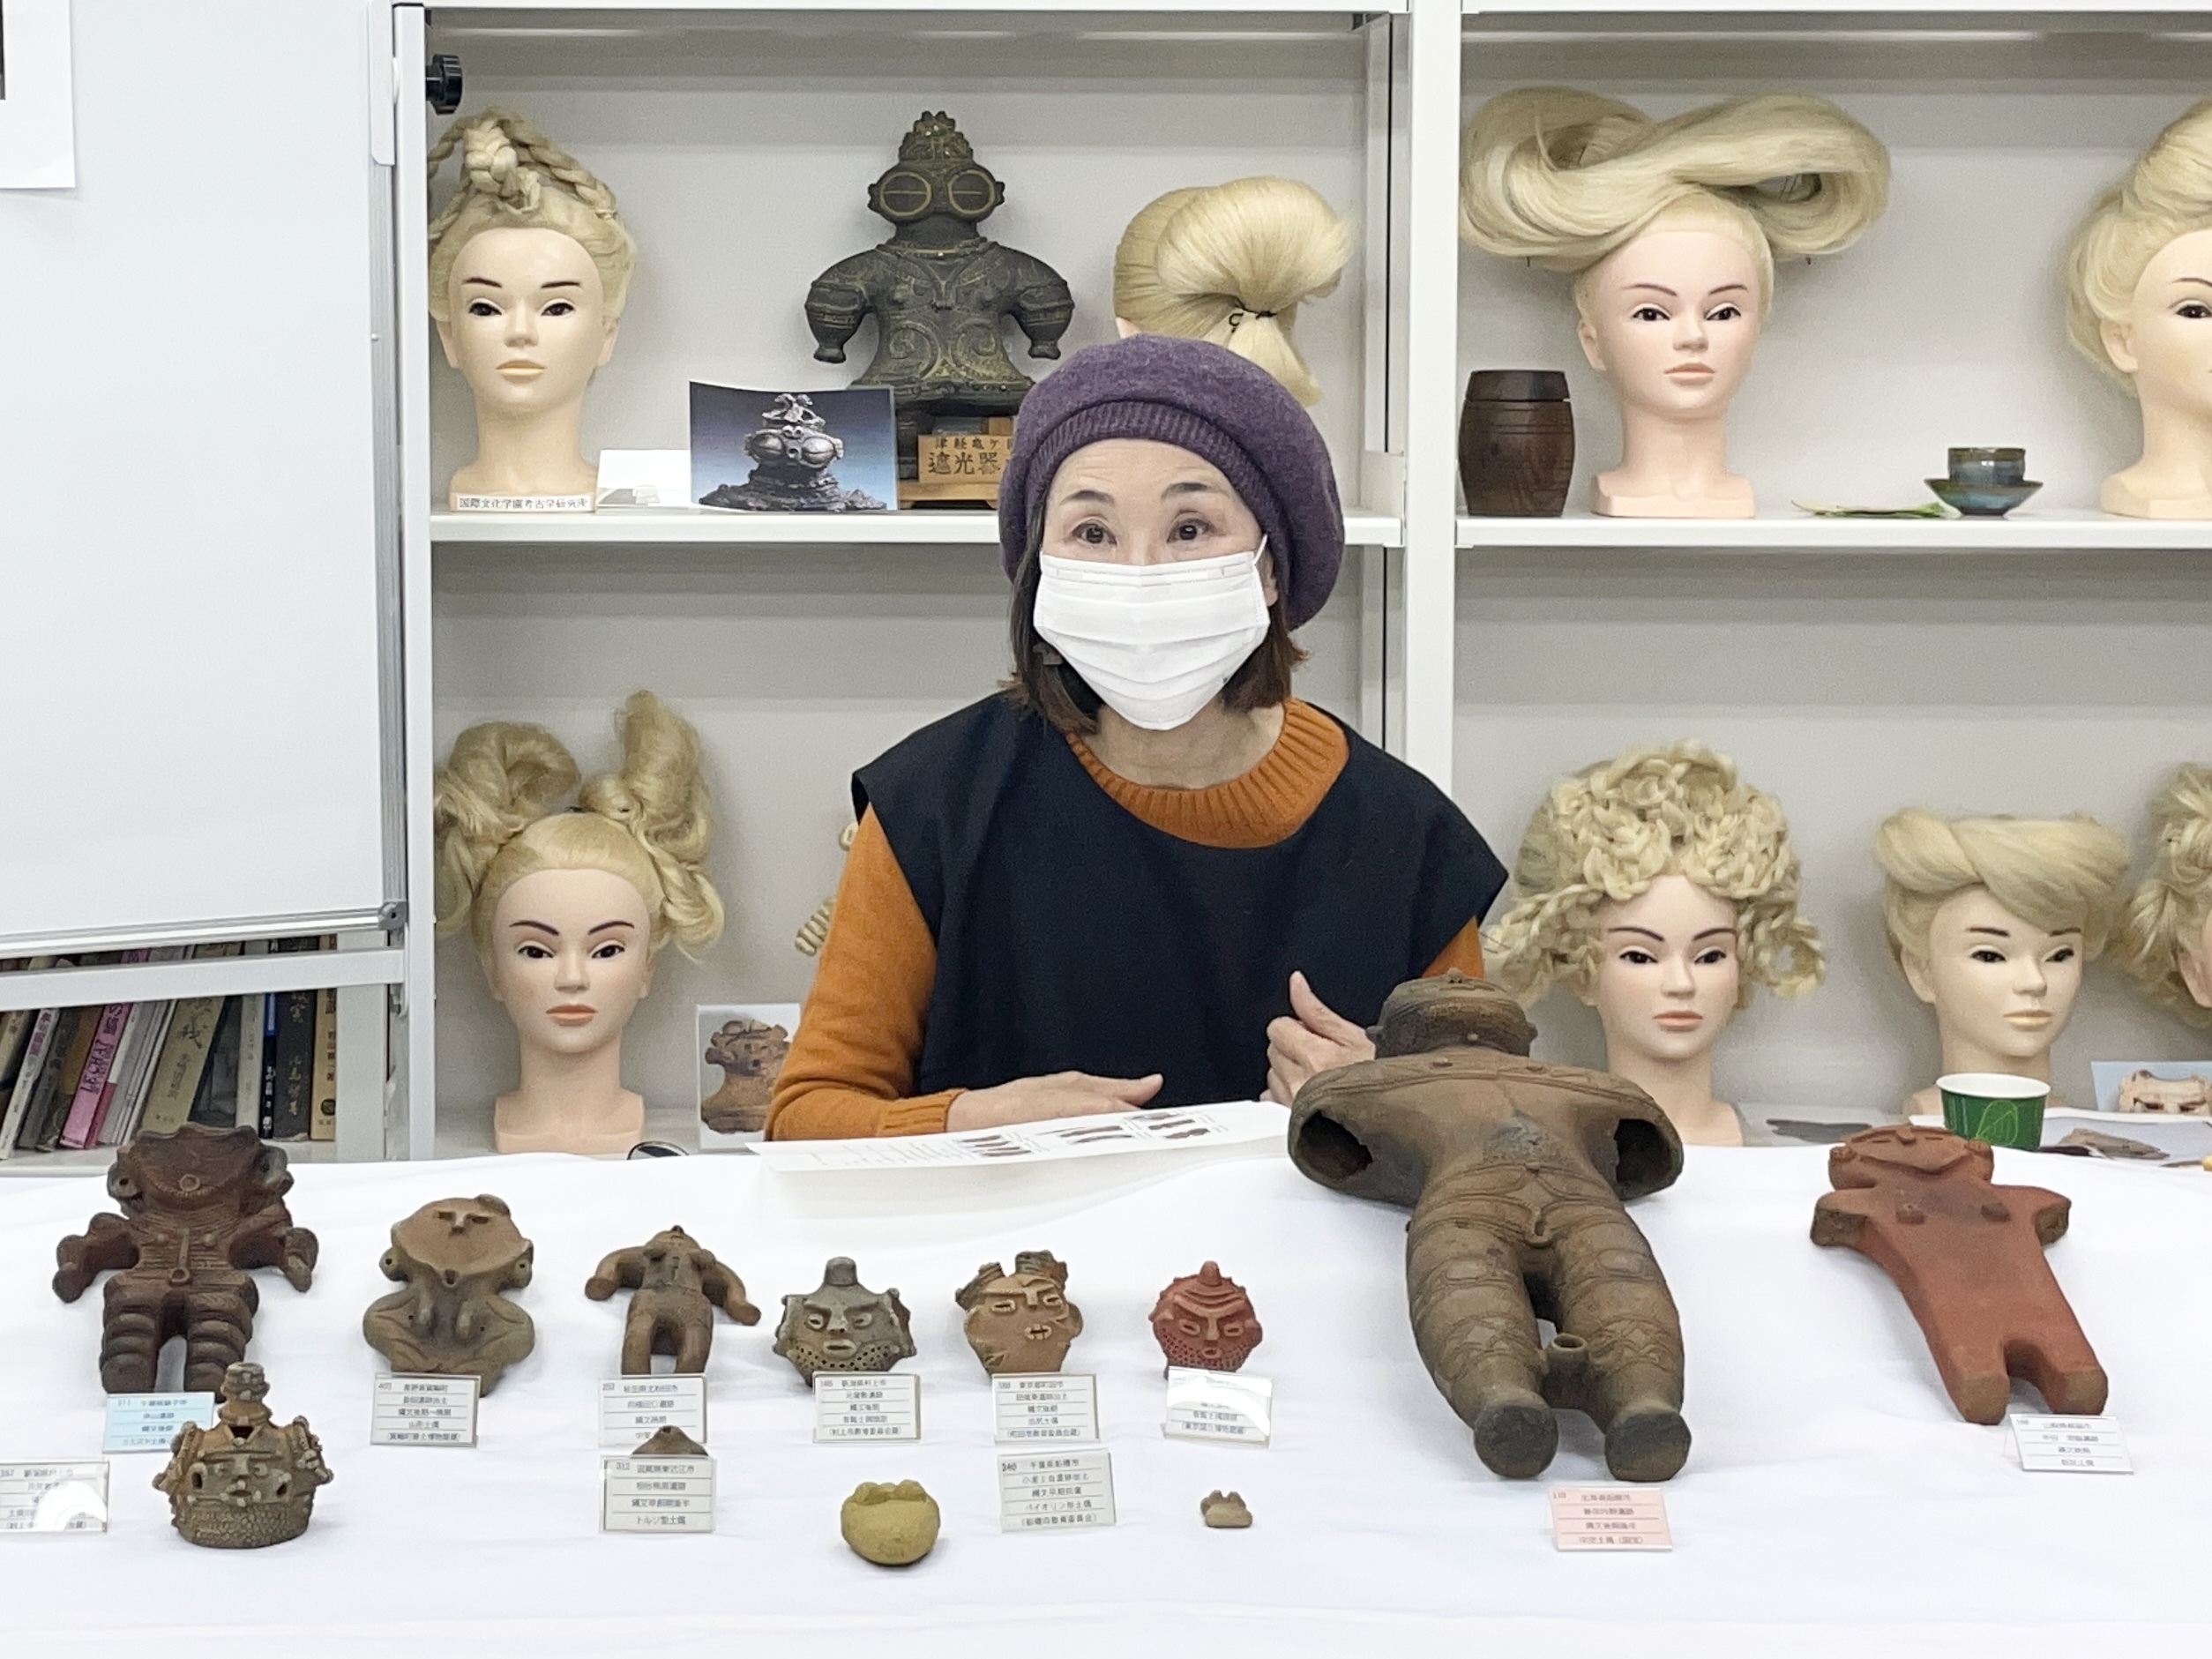 国際文化学園の美容考古学研究所が
「土偶の作り方を通して考える、土偶の意味」
をテーマに勉強会を開催